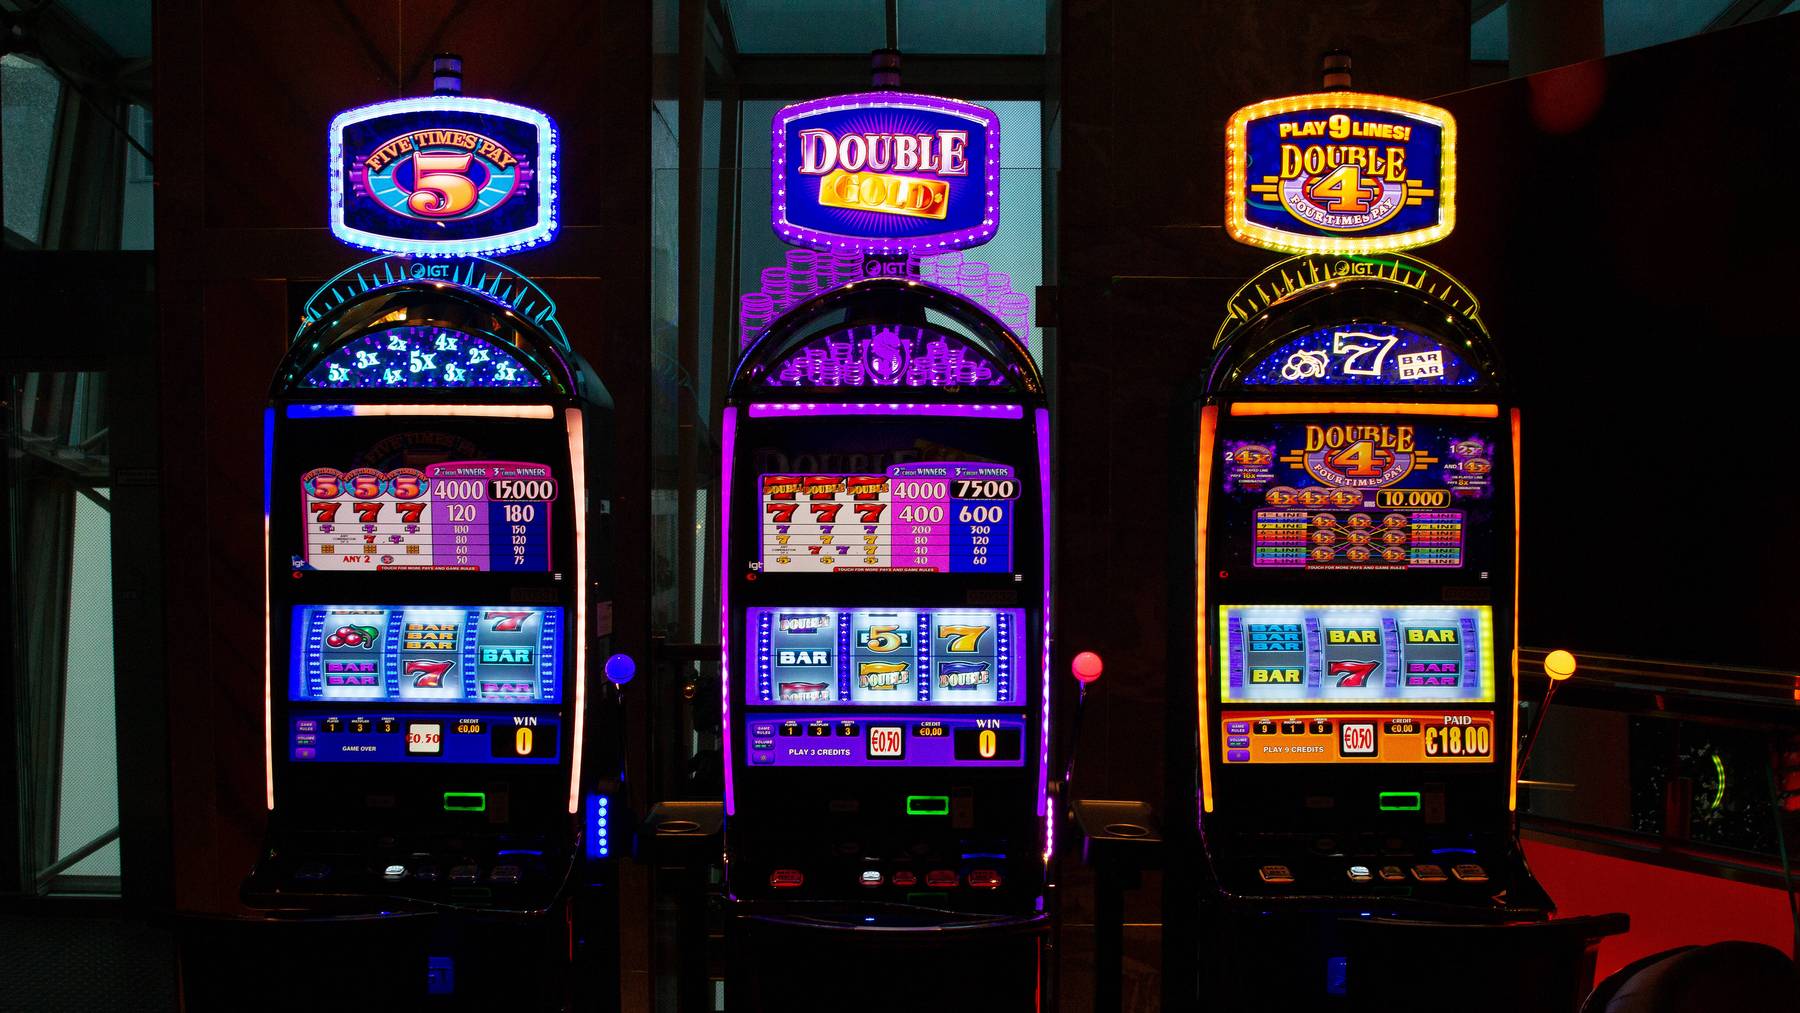 Die Betriebe hatten nicht zugelassene Glückspielautomaten. (Symbolbild)